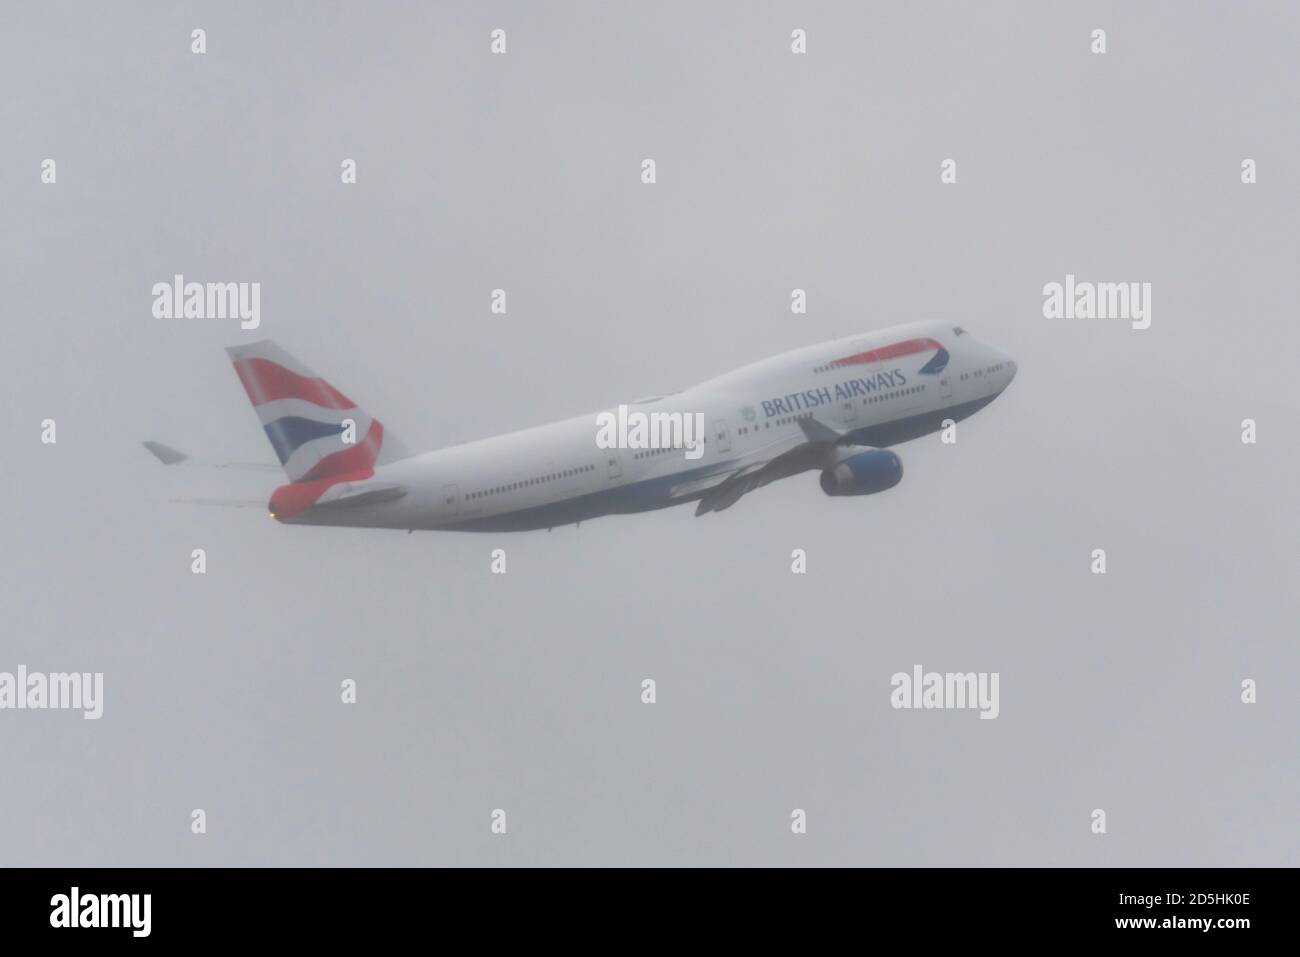 Addio per British Airways Boeing 747 Jumbo Jet Airliner aereo G-CIVY dopo la crisi COVID-19. Ultima a lasciare Heathrow dirigendosi verso la nuvola per rottamare Foto Stock